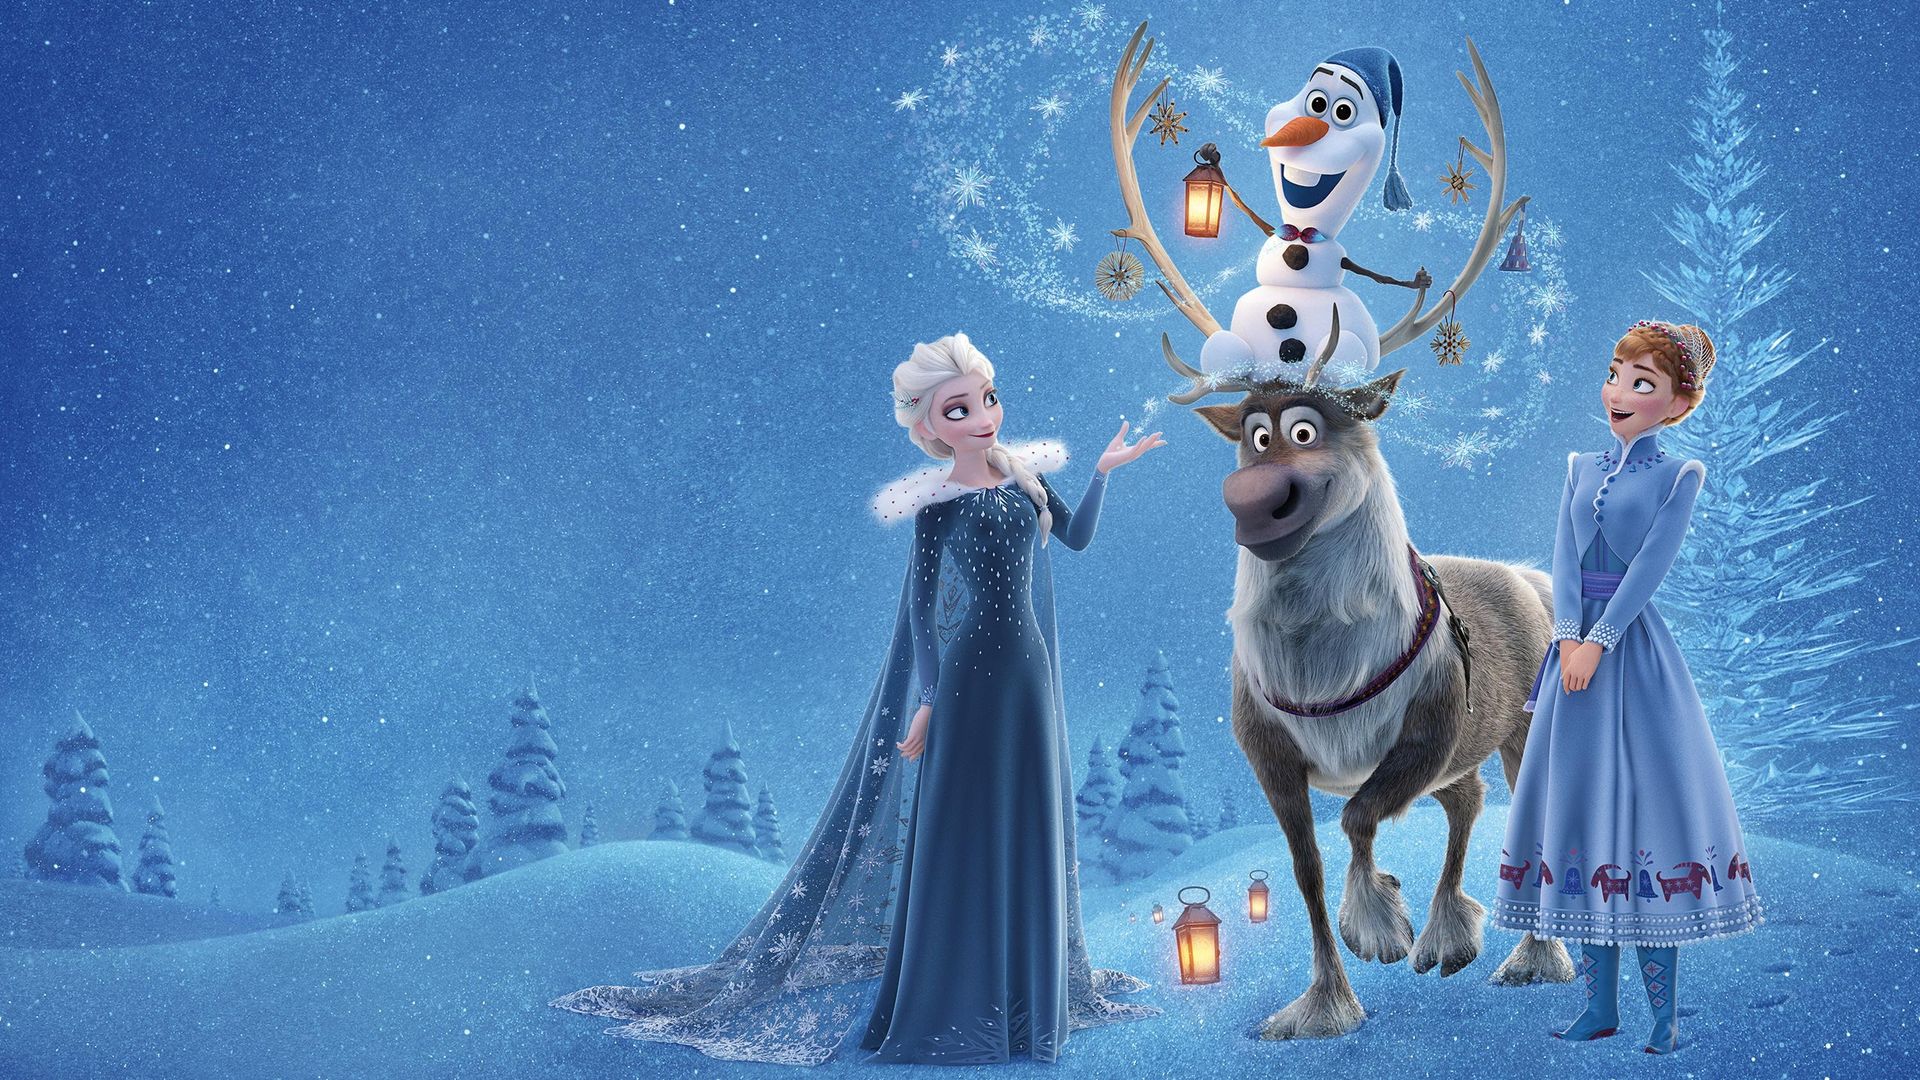 Olaf's Frozen Adventure Backdrop